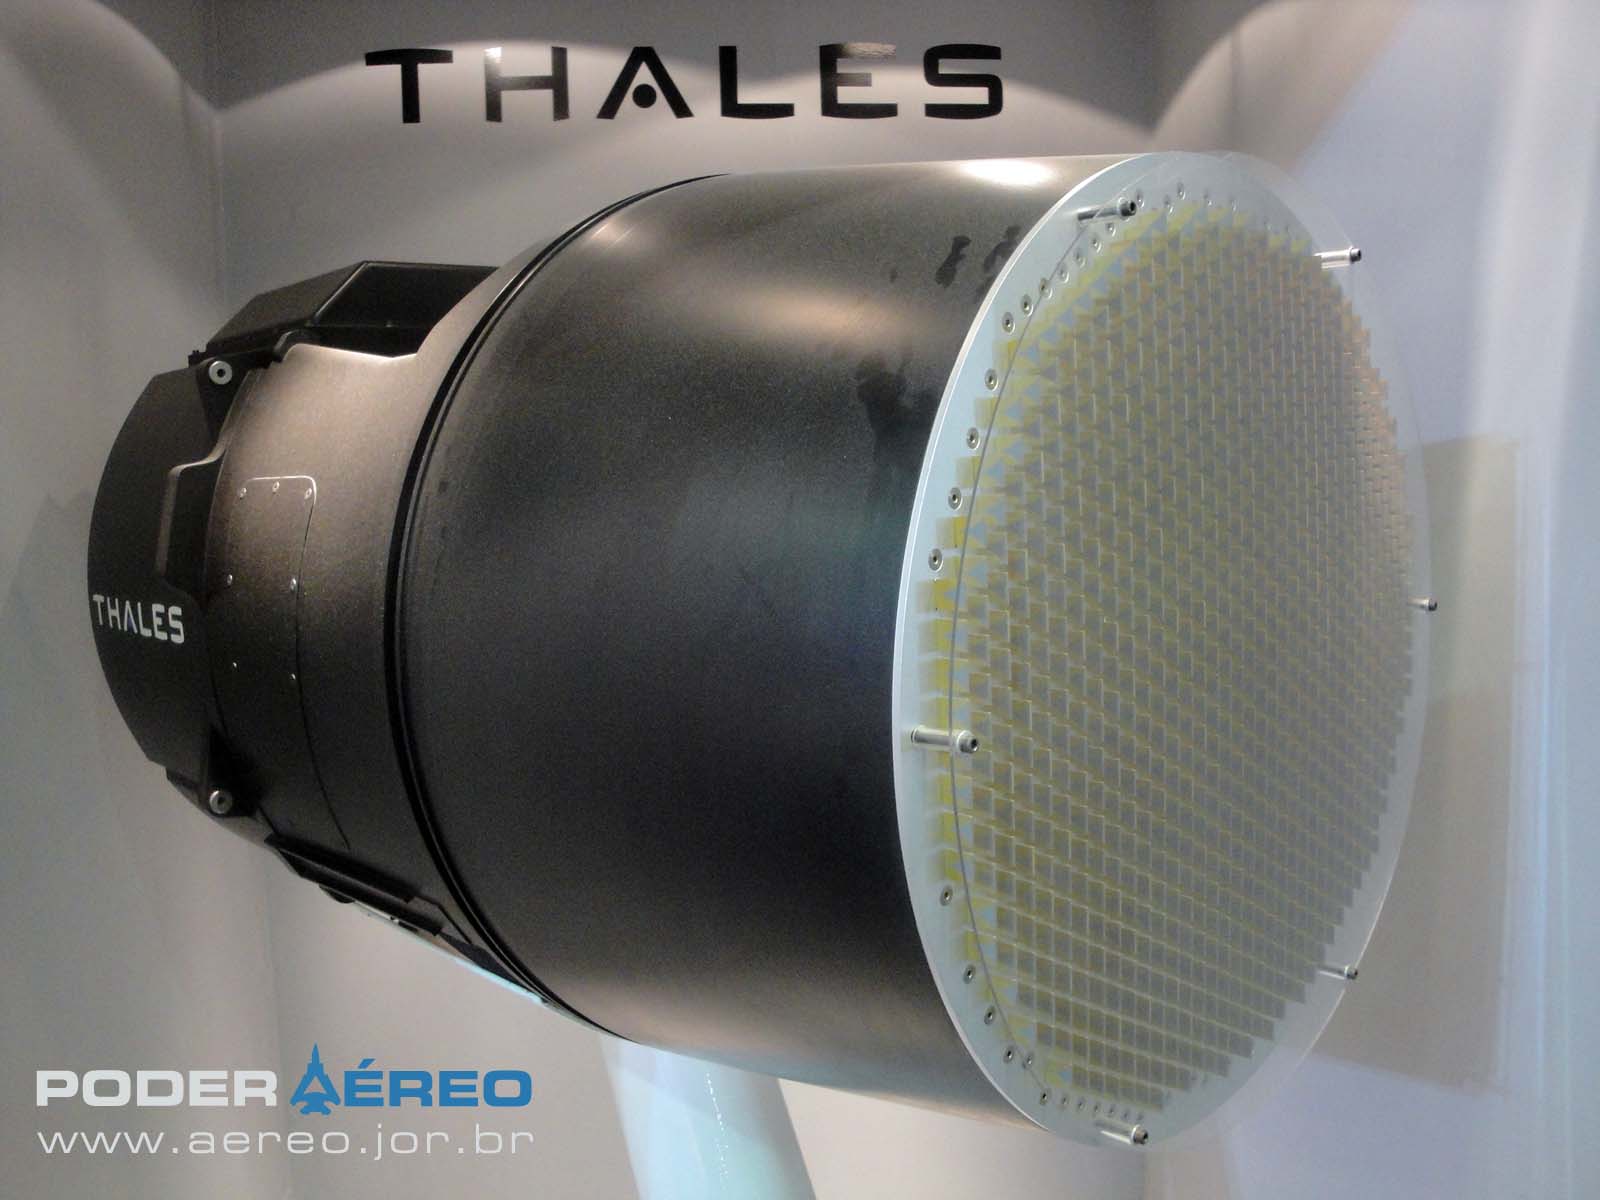 Radar-RBE-2-AESA-da-Thales-na-Laad-2011-foto-2-Nun%C3%A3o-Poder-A%C3%A9reo.jpg